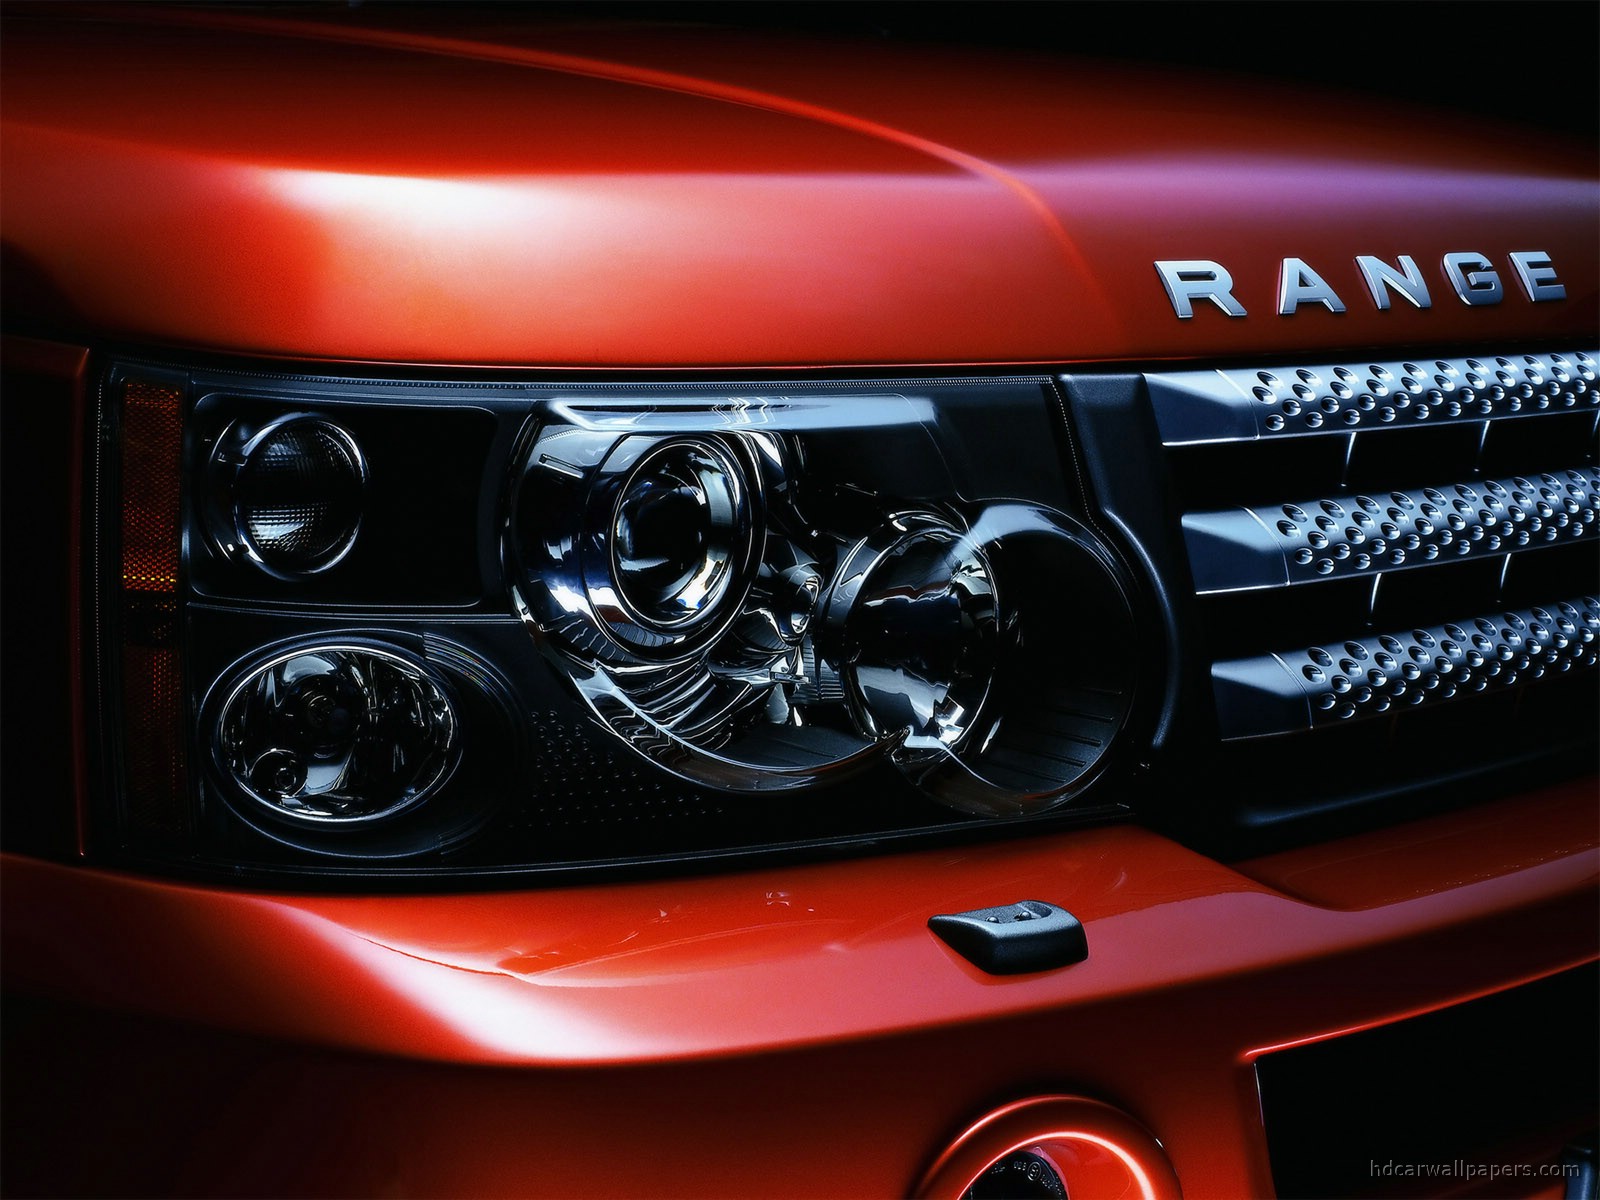 Range Rover Sport Desktop Wallpaper On